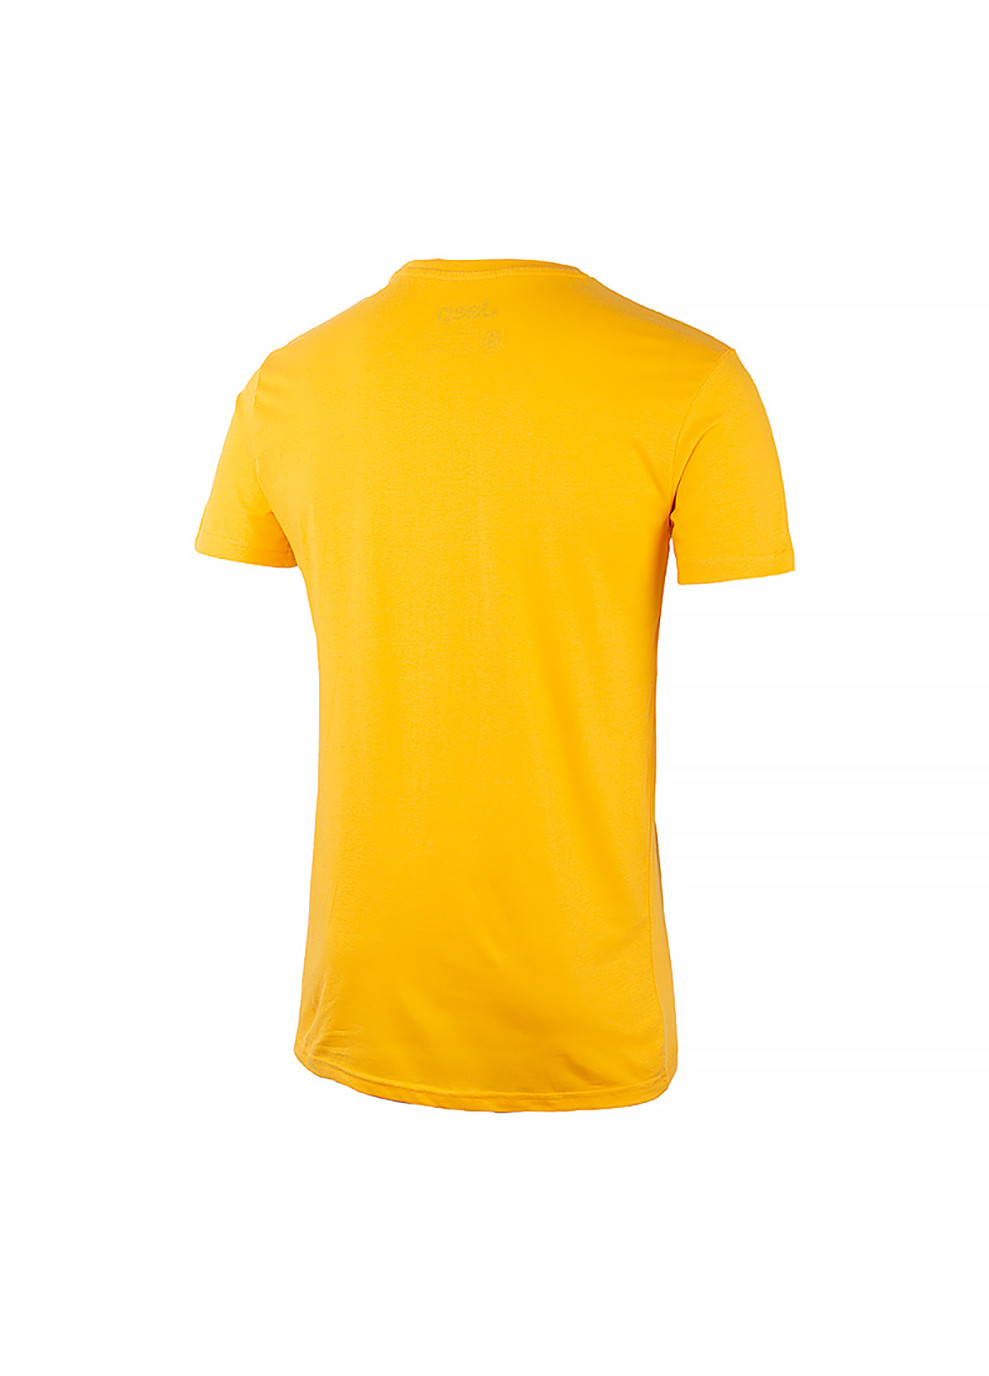 Желтая мужская футболка t-shirt &grille желтый s (o102589-y250 s) Jeep